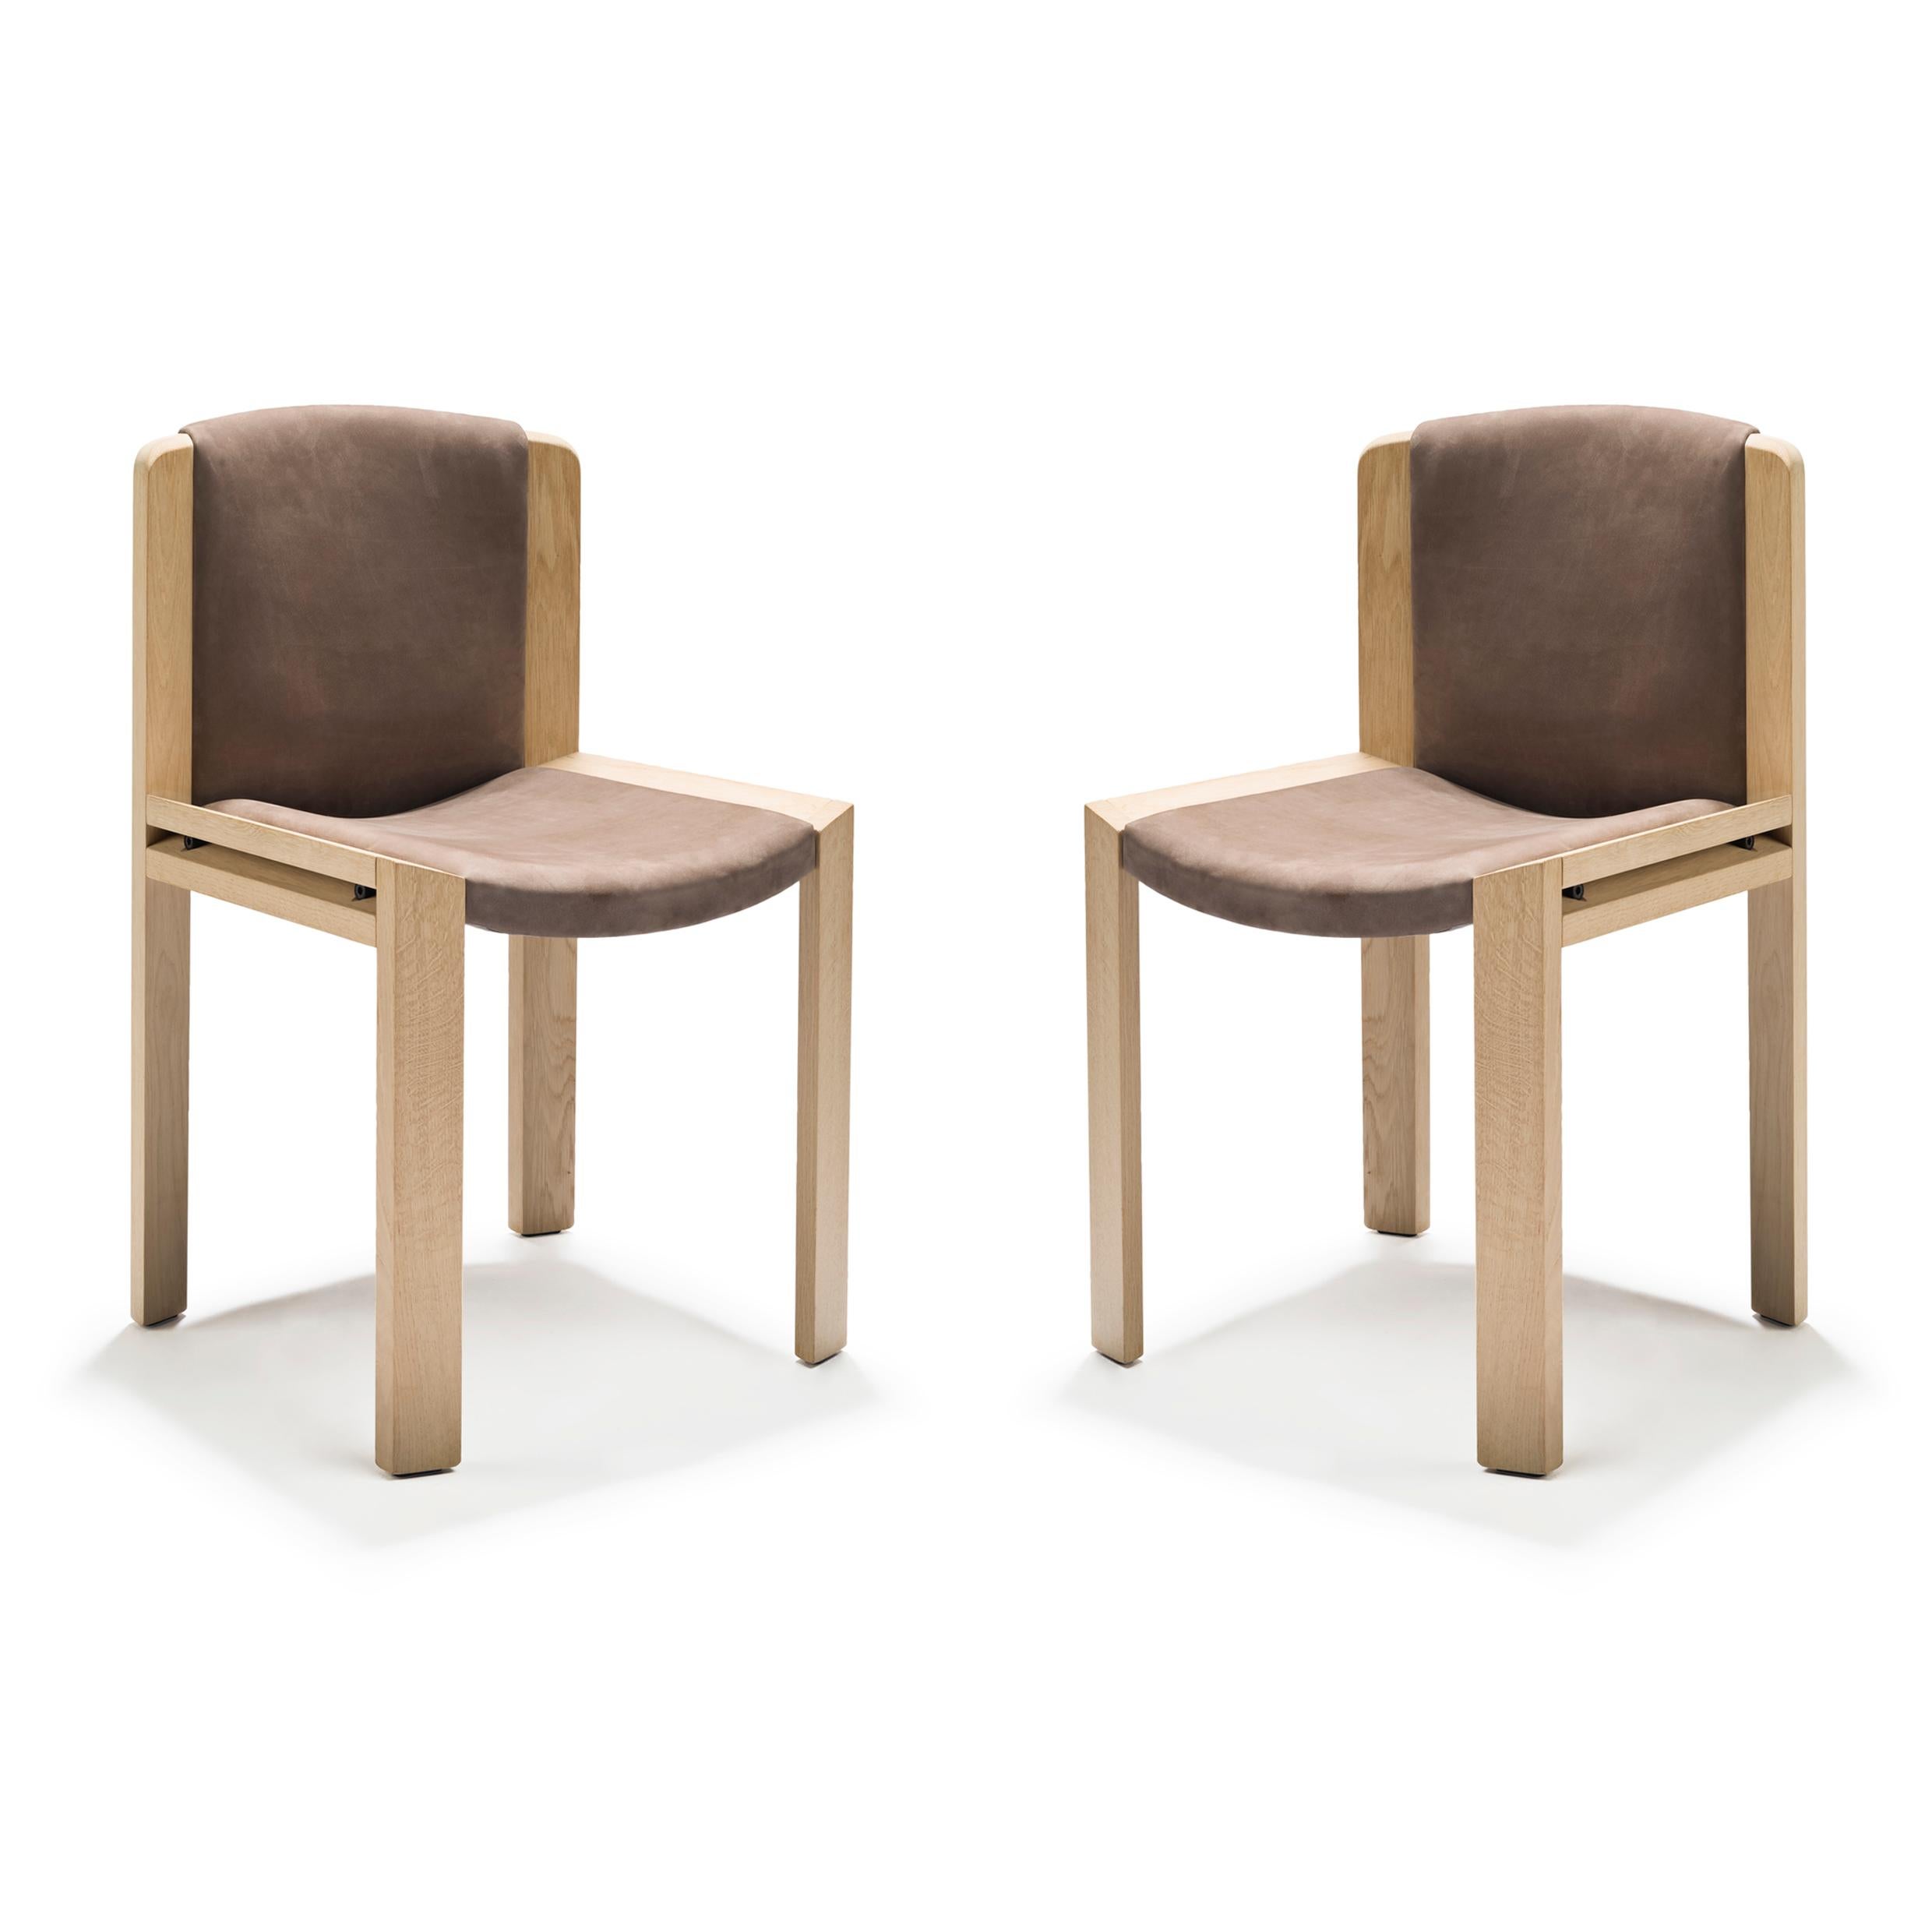 Stuhl, entworfen von Joe Colombo im Jahr 1965. 

Der von dem zukunftsorientierten italienischen Designer Joe Colombo entworfene Stuhl 300 ist ein wunderschönes Beispiel für sein funktionales Designverständnis. Sitz und Rückenlehne sind gepolstert